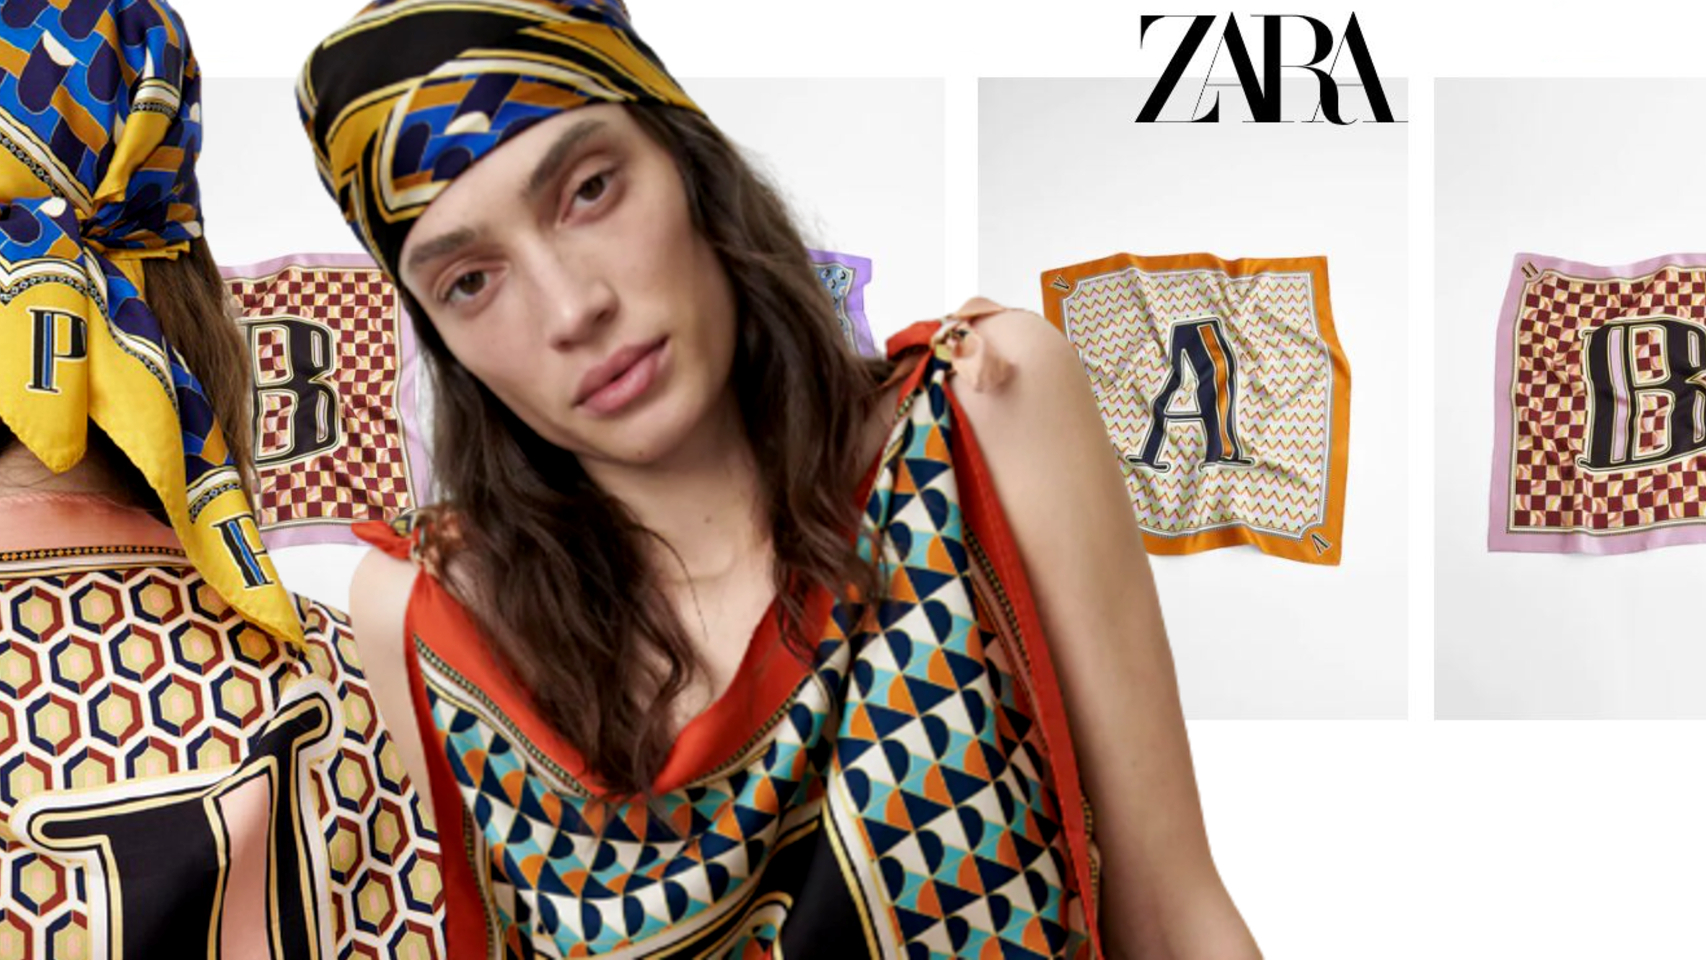 El pañuelo con iniciales de Zara que se va a convertir en el 'must have' de esta temporada.